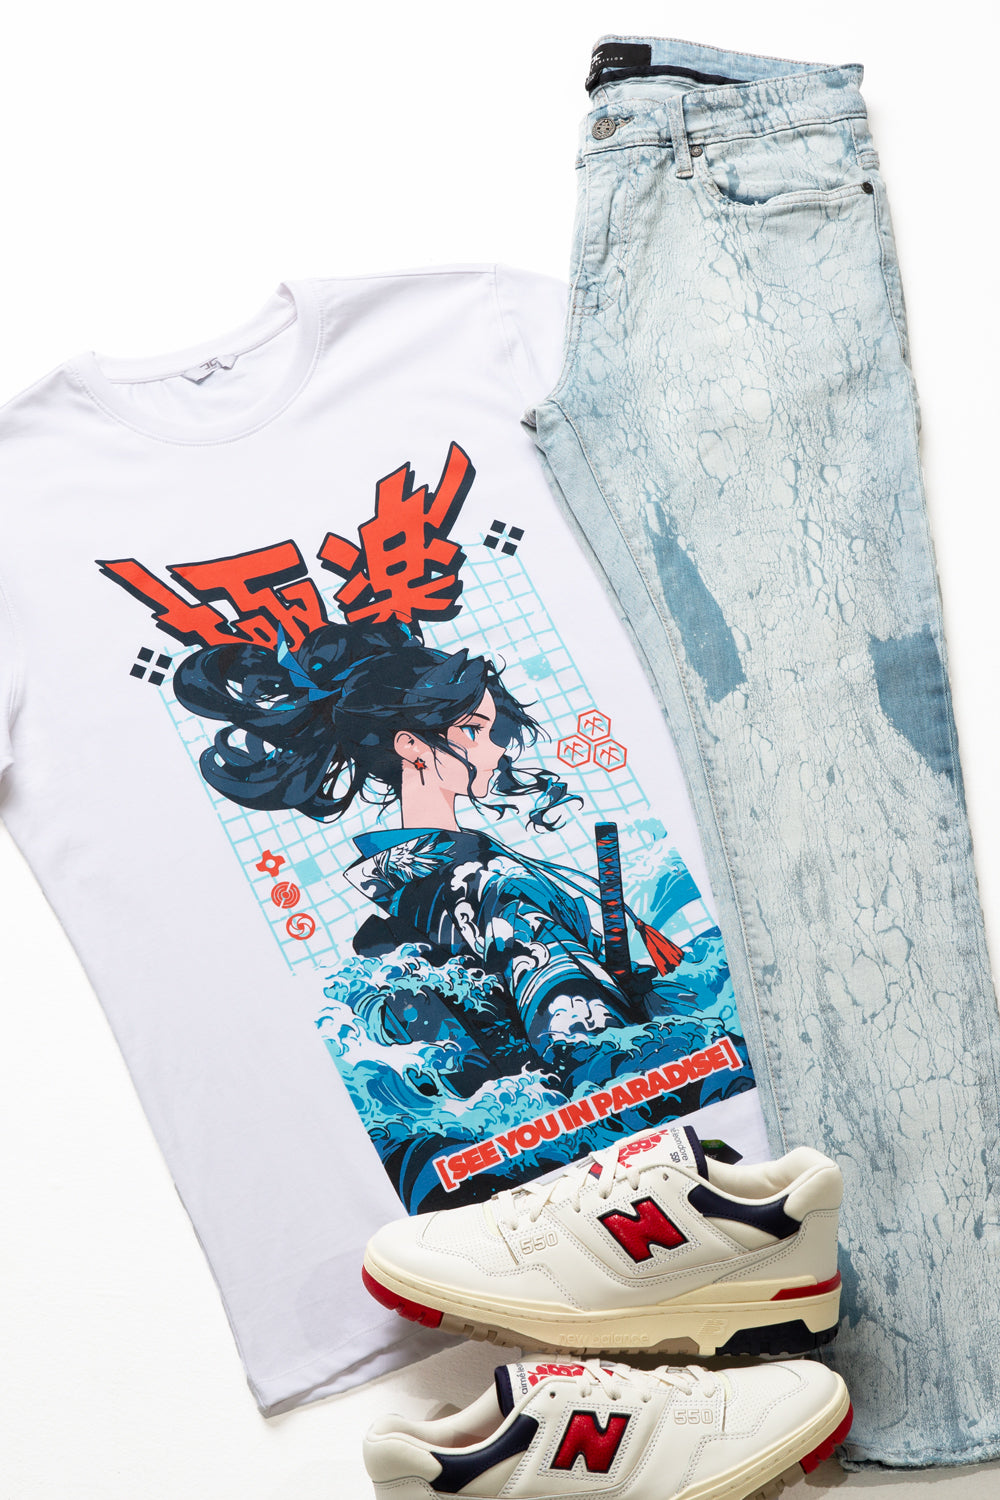 Water Samurai T-Shirt (White)